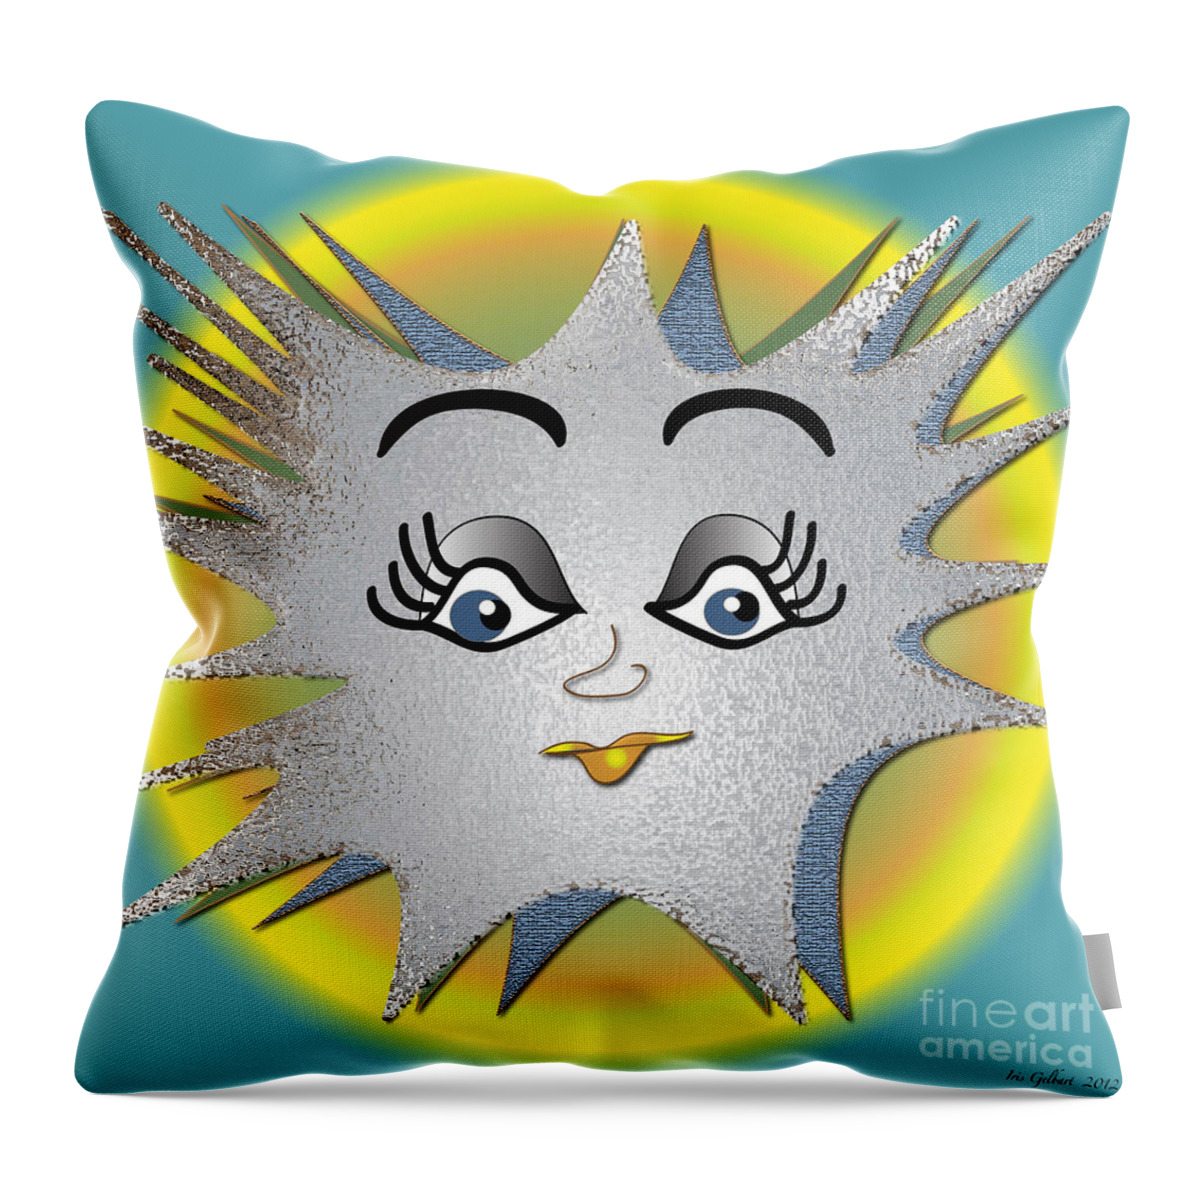 Cartoon Throw Pillow featuring the digital art Sunny Boy by Iris Gelbart